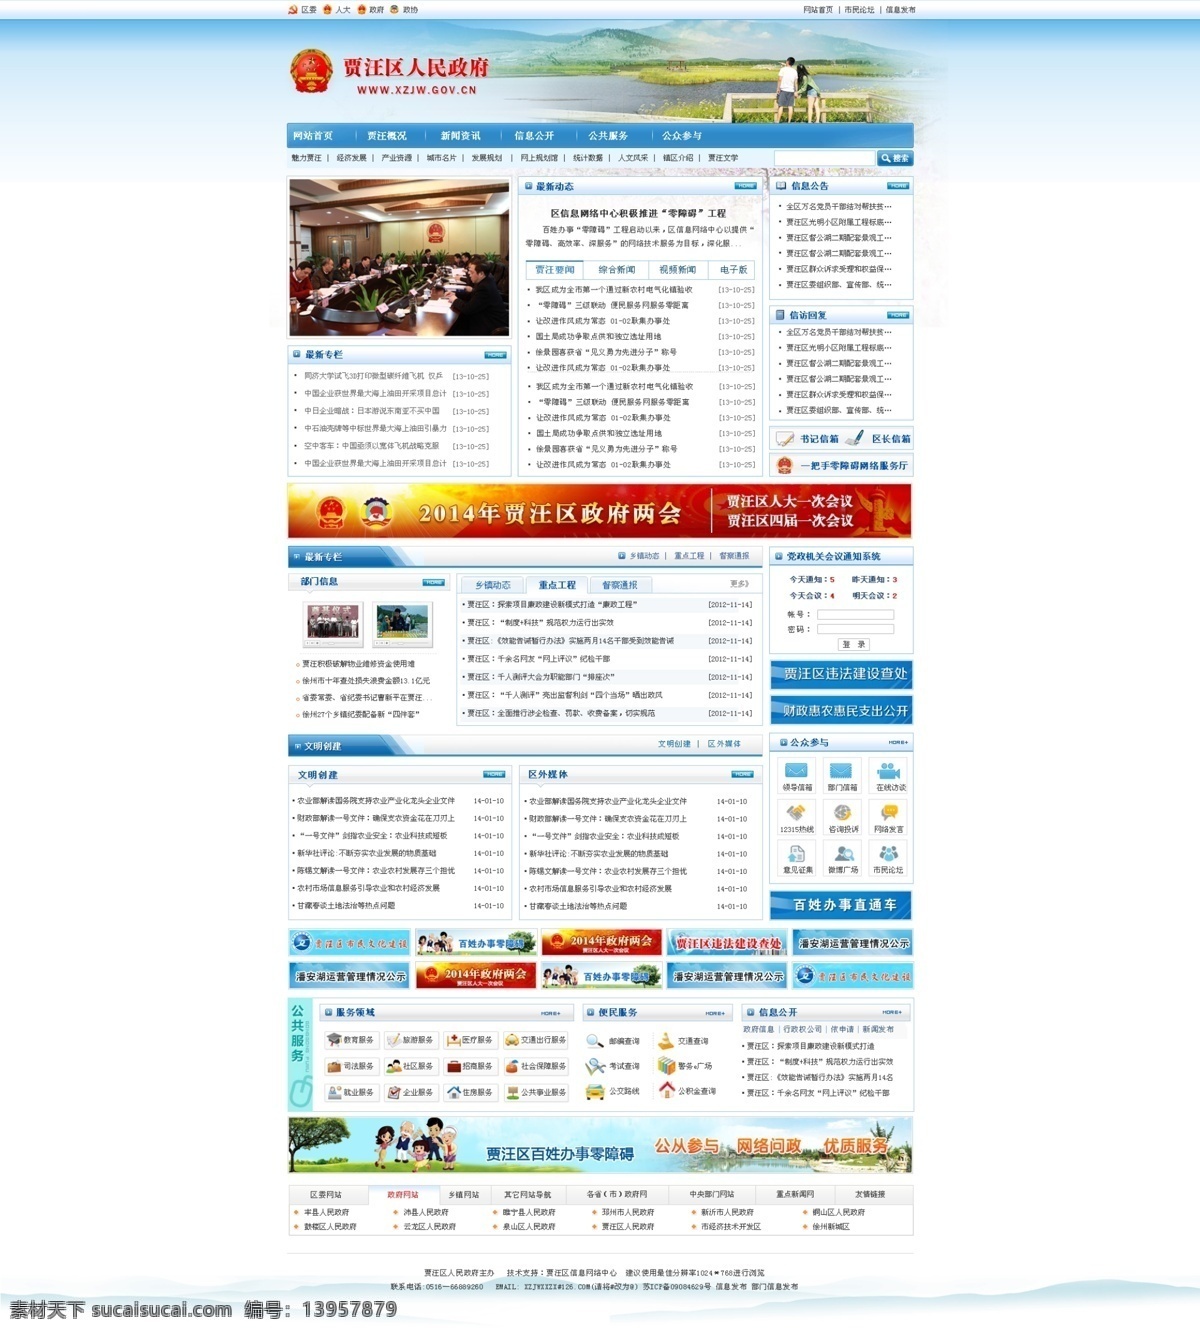 大气 蓝色 网页 网页模板 网页模版 网站模板 源文件 政府网站 模板下载 中文模板 网页素材